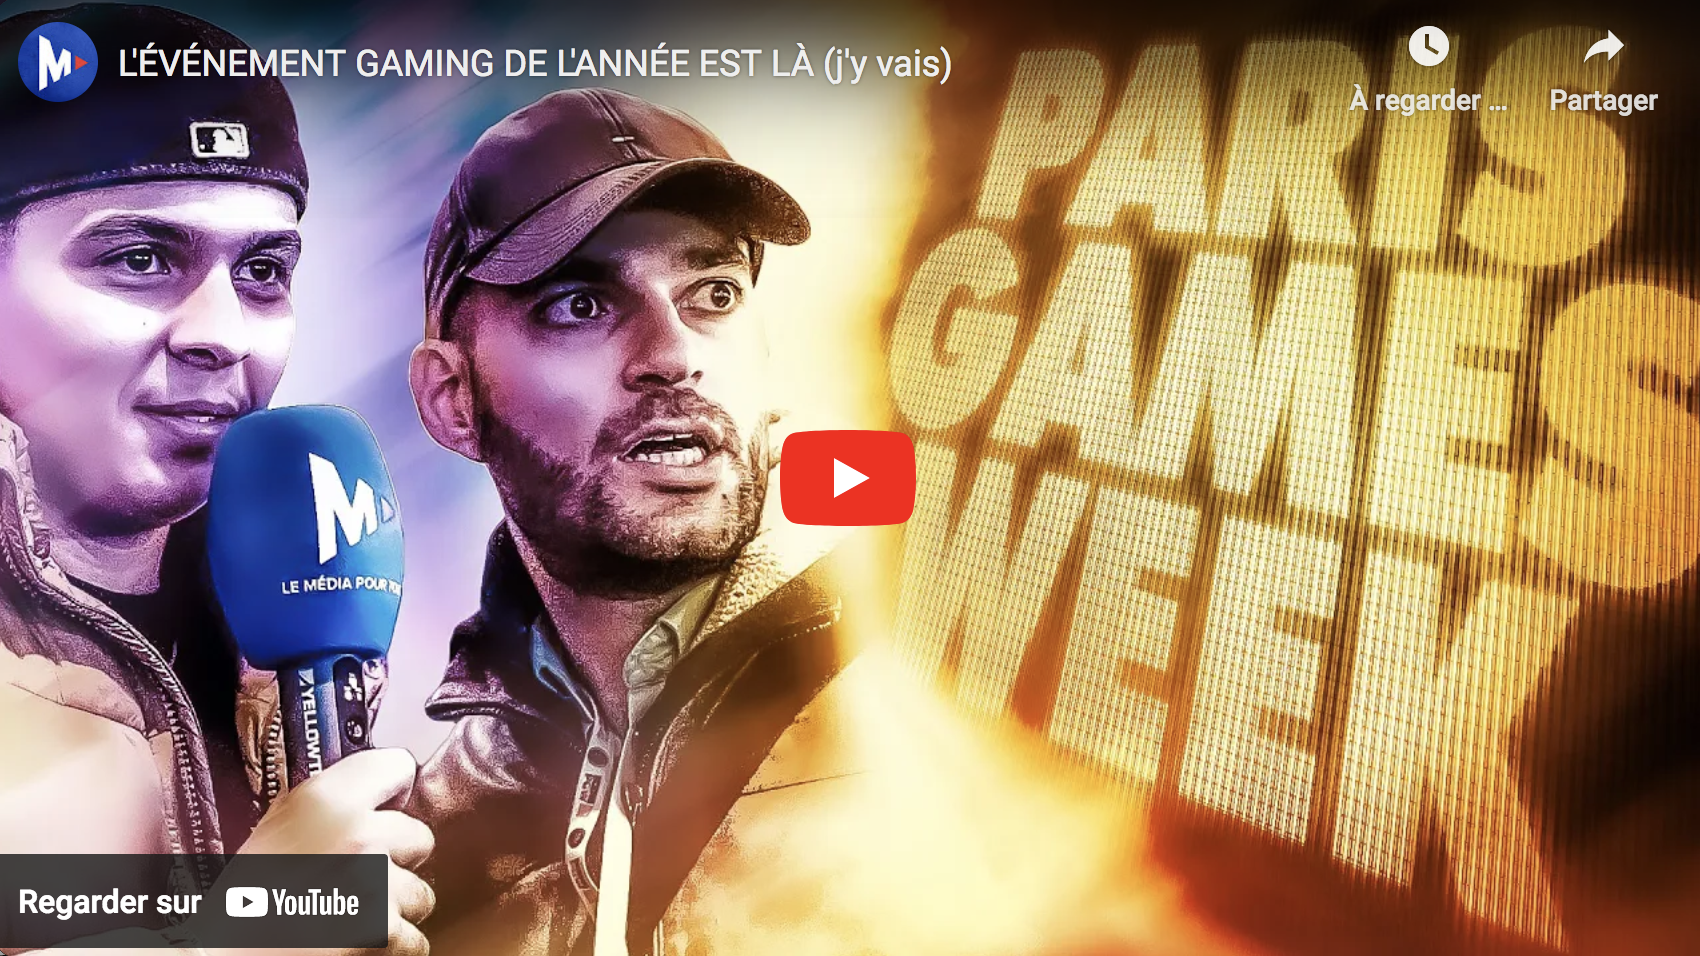 Rencontre affligeante avec les lobotomisés de la Paris Games Week (VIDÉO)